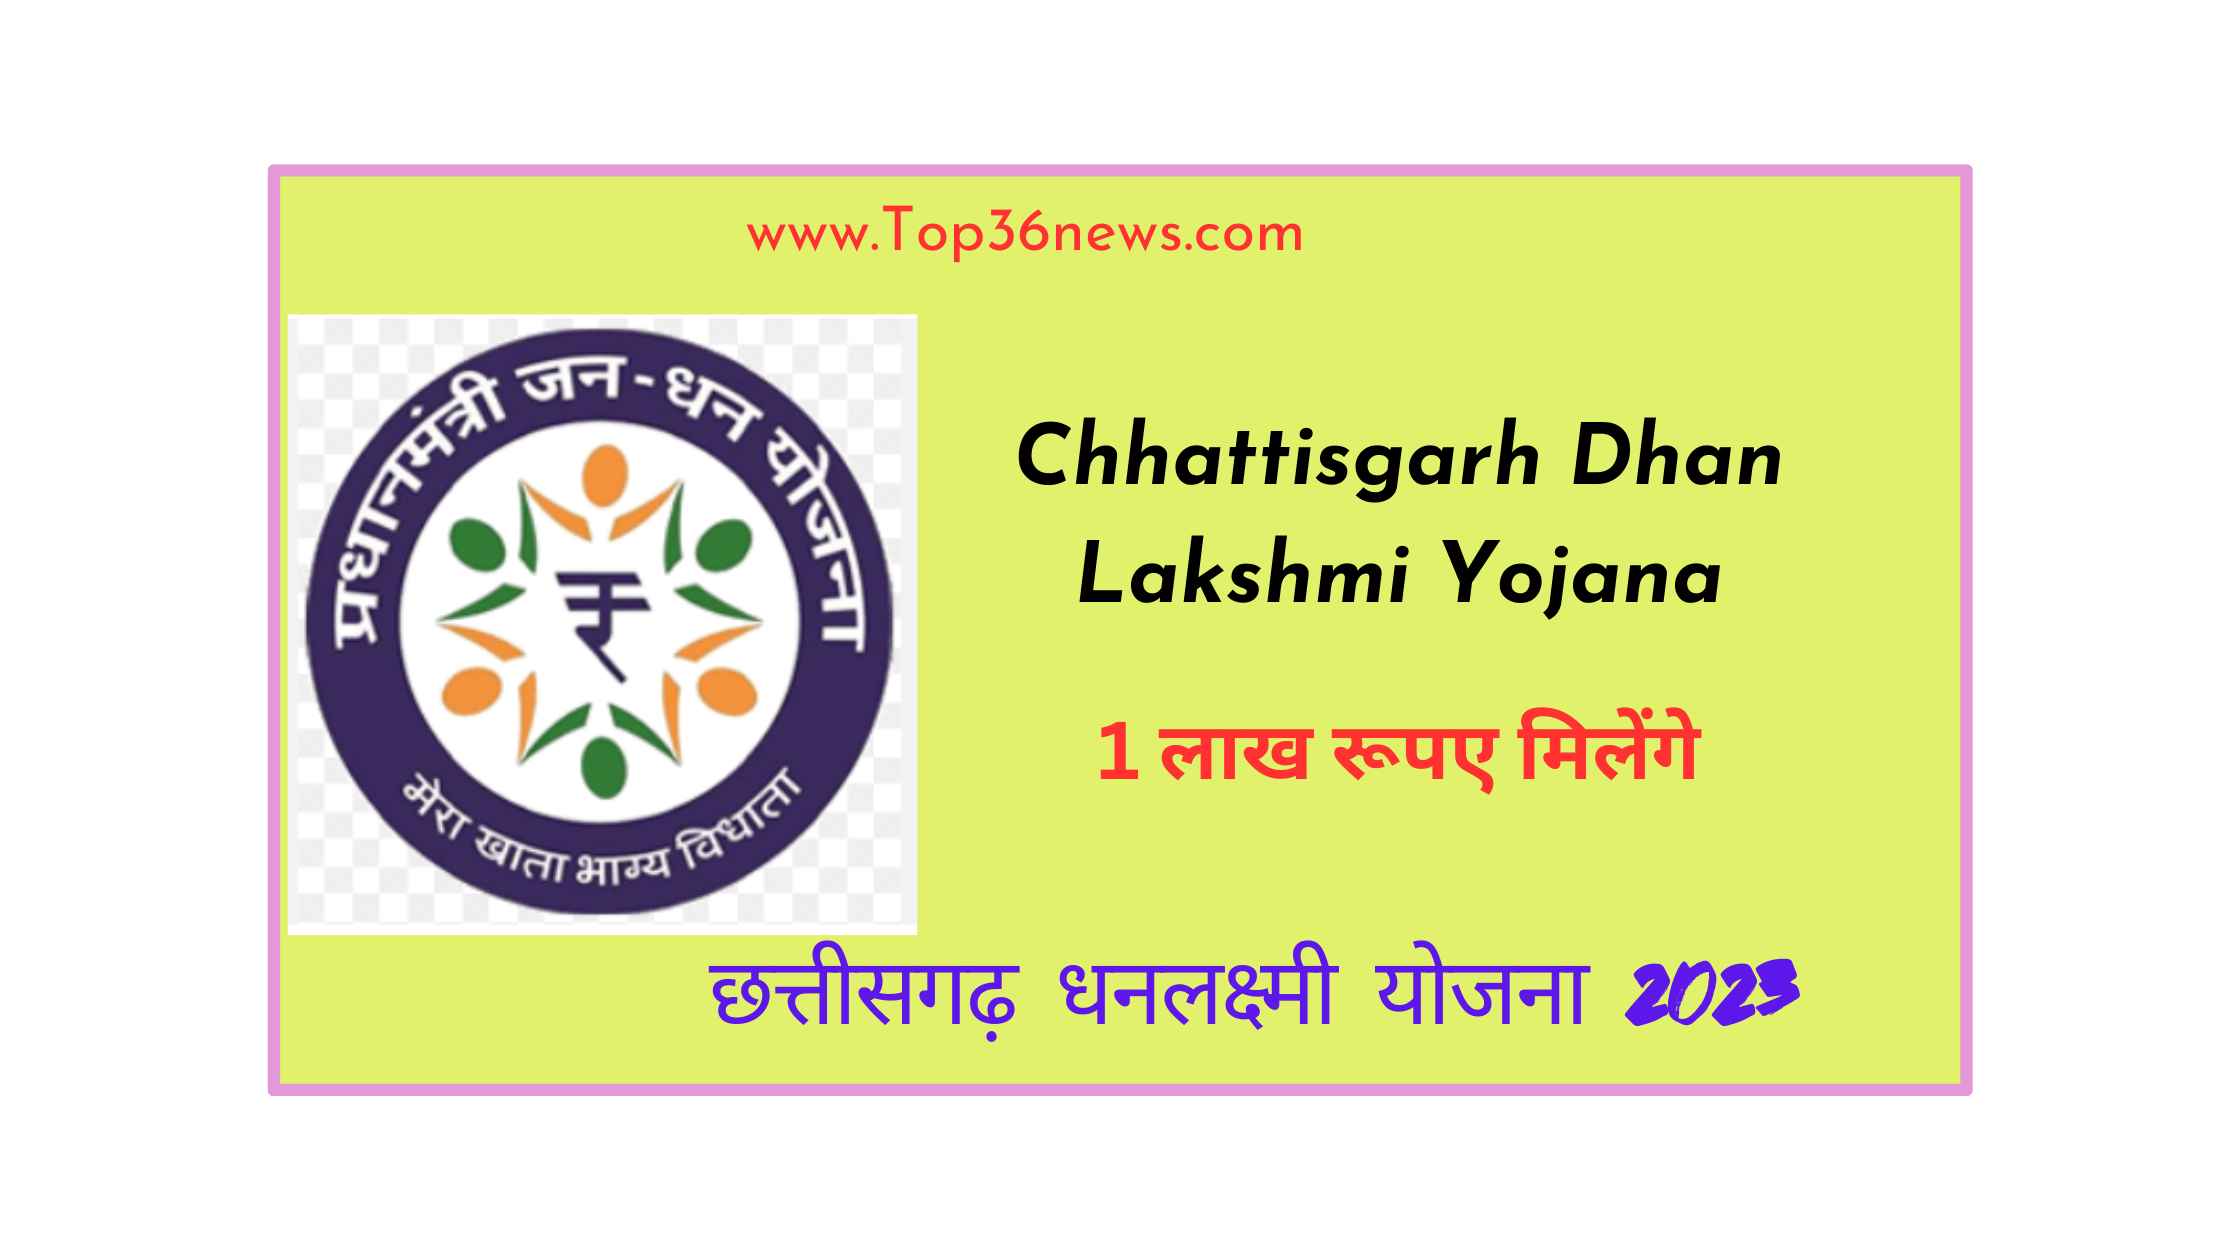 Chhattisgarh Dhan Lakshmi Yojana